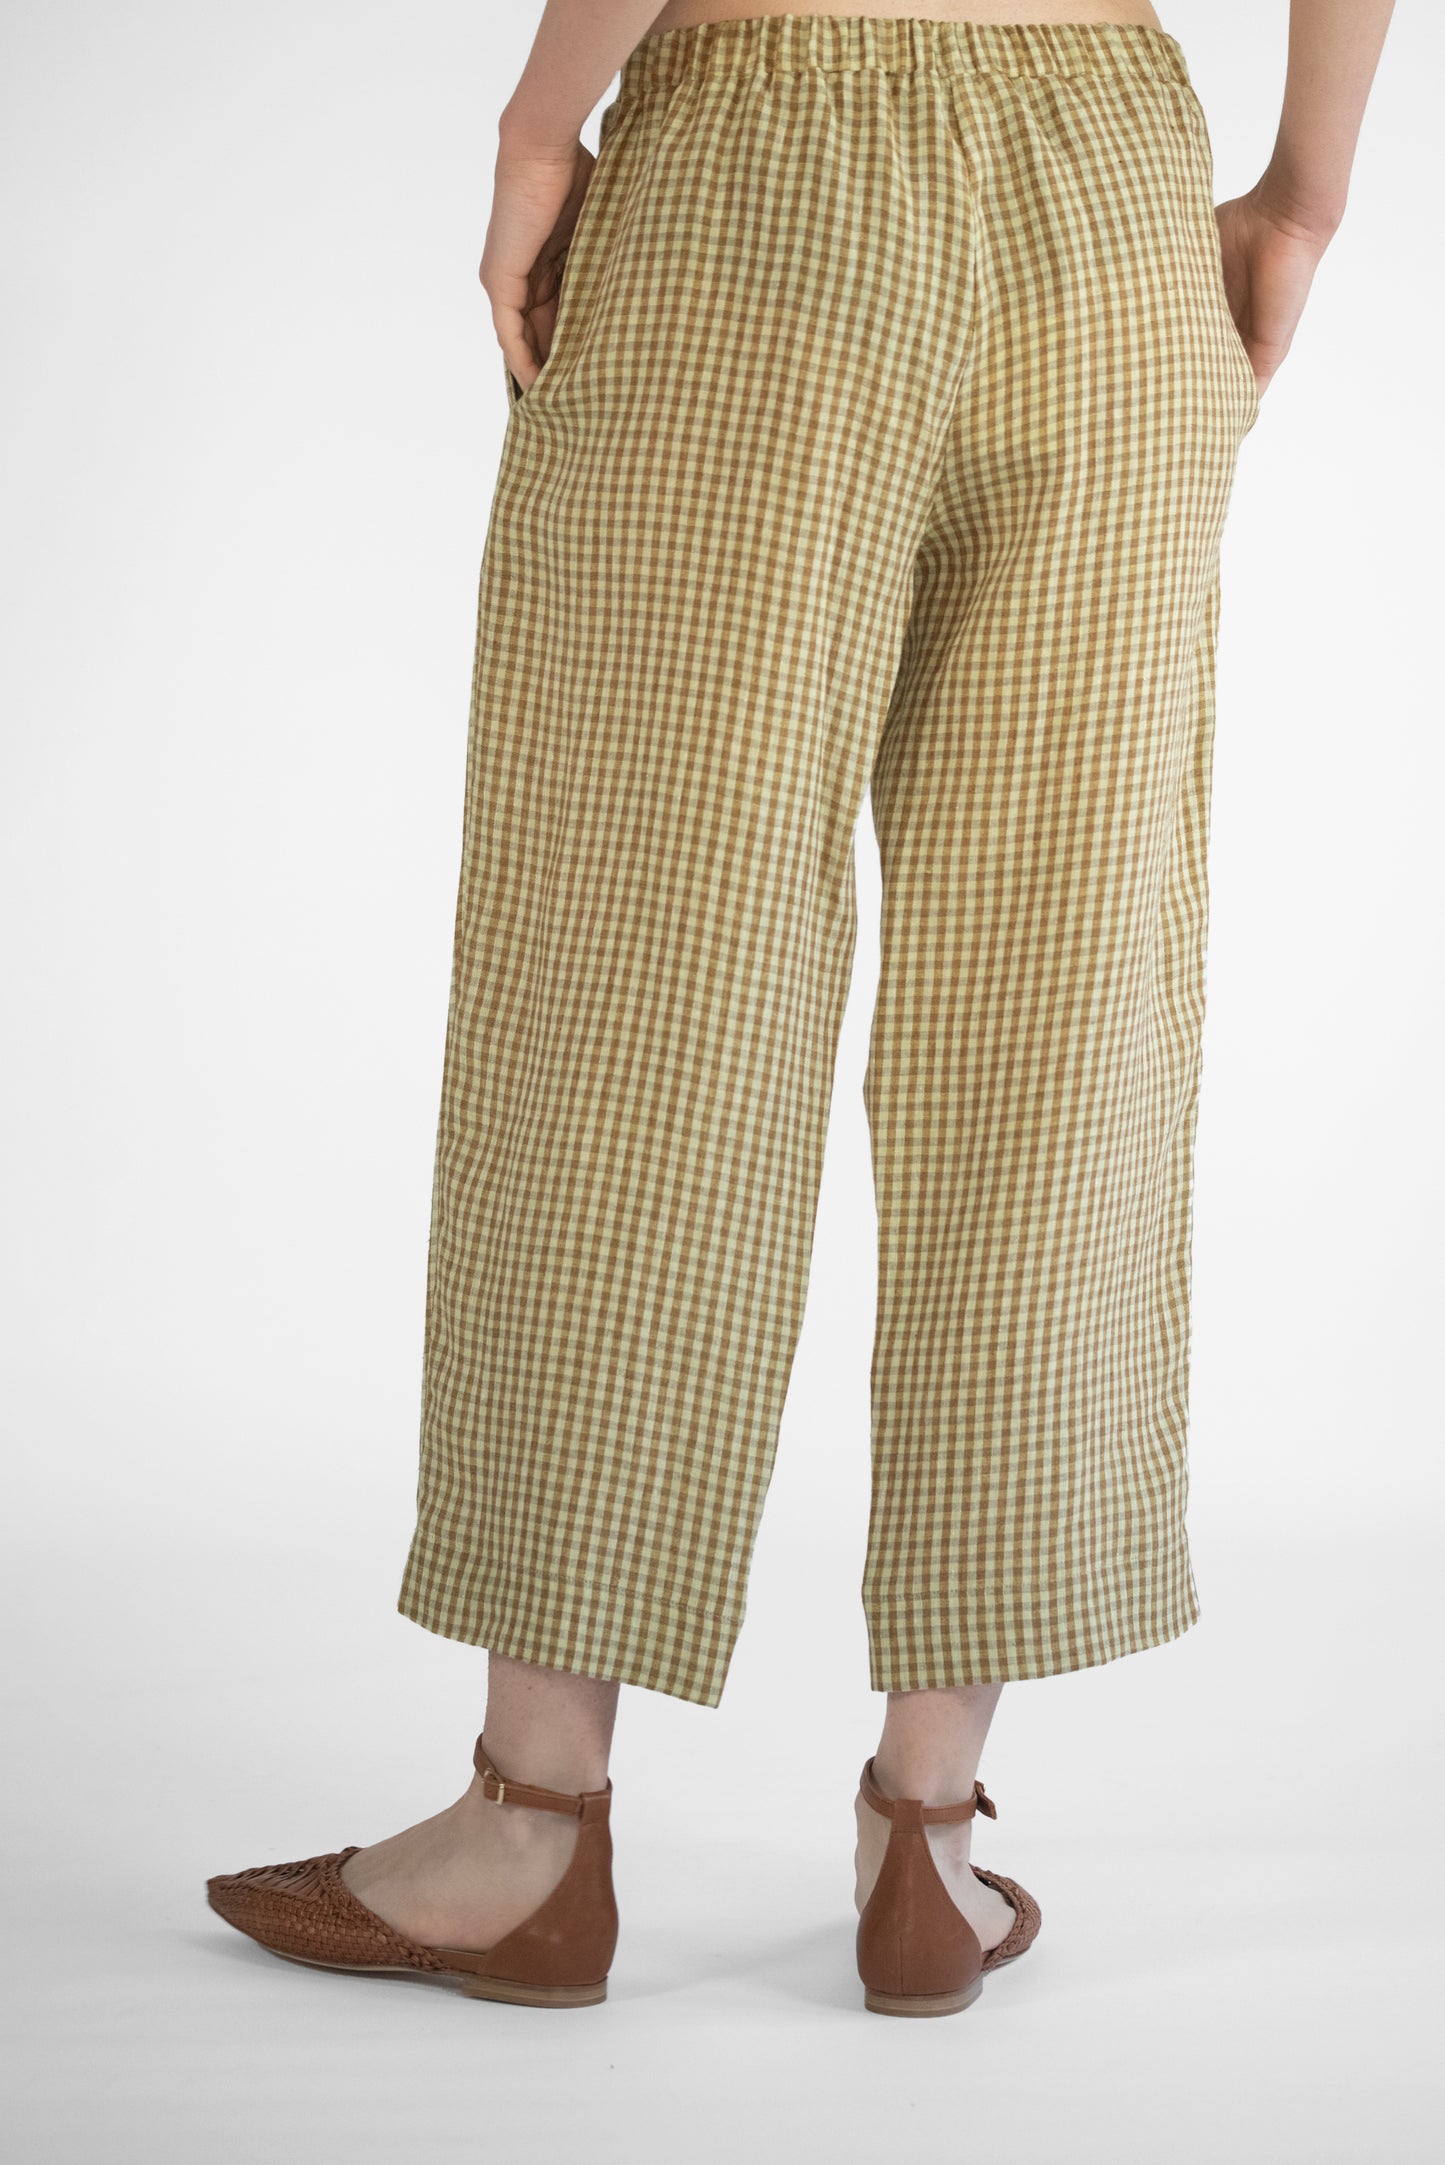 Pantalone culotte in lino a quadretti